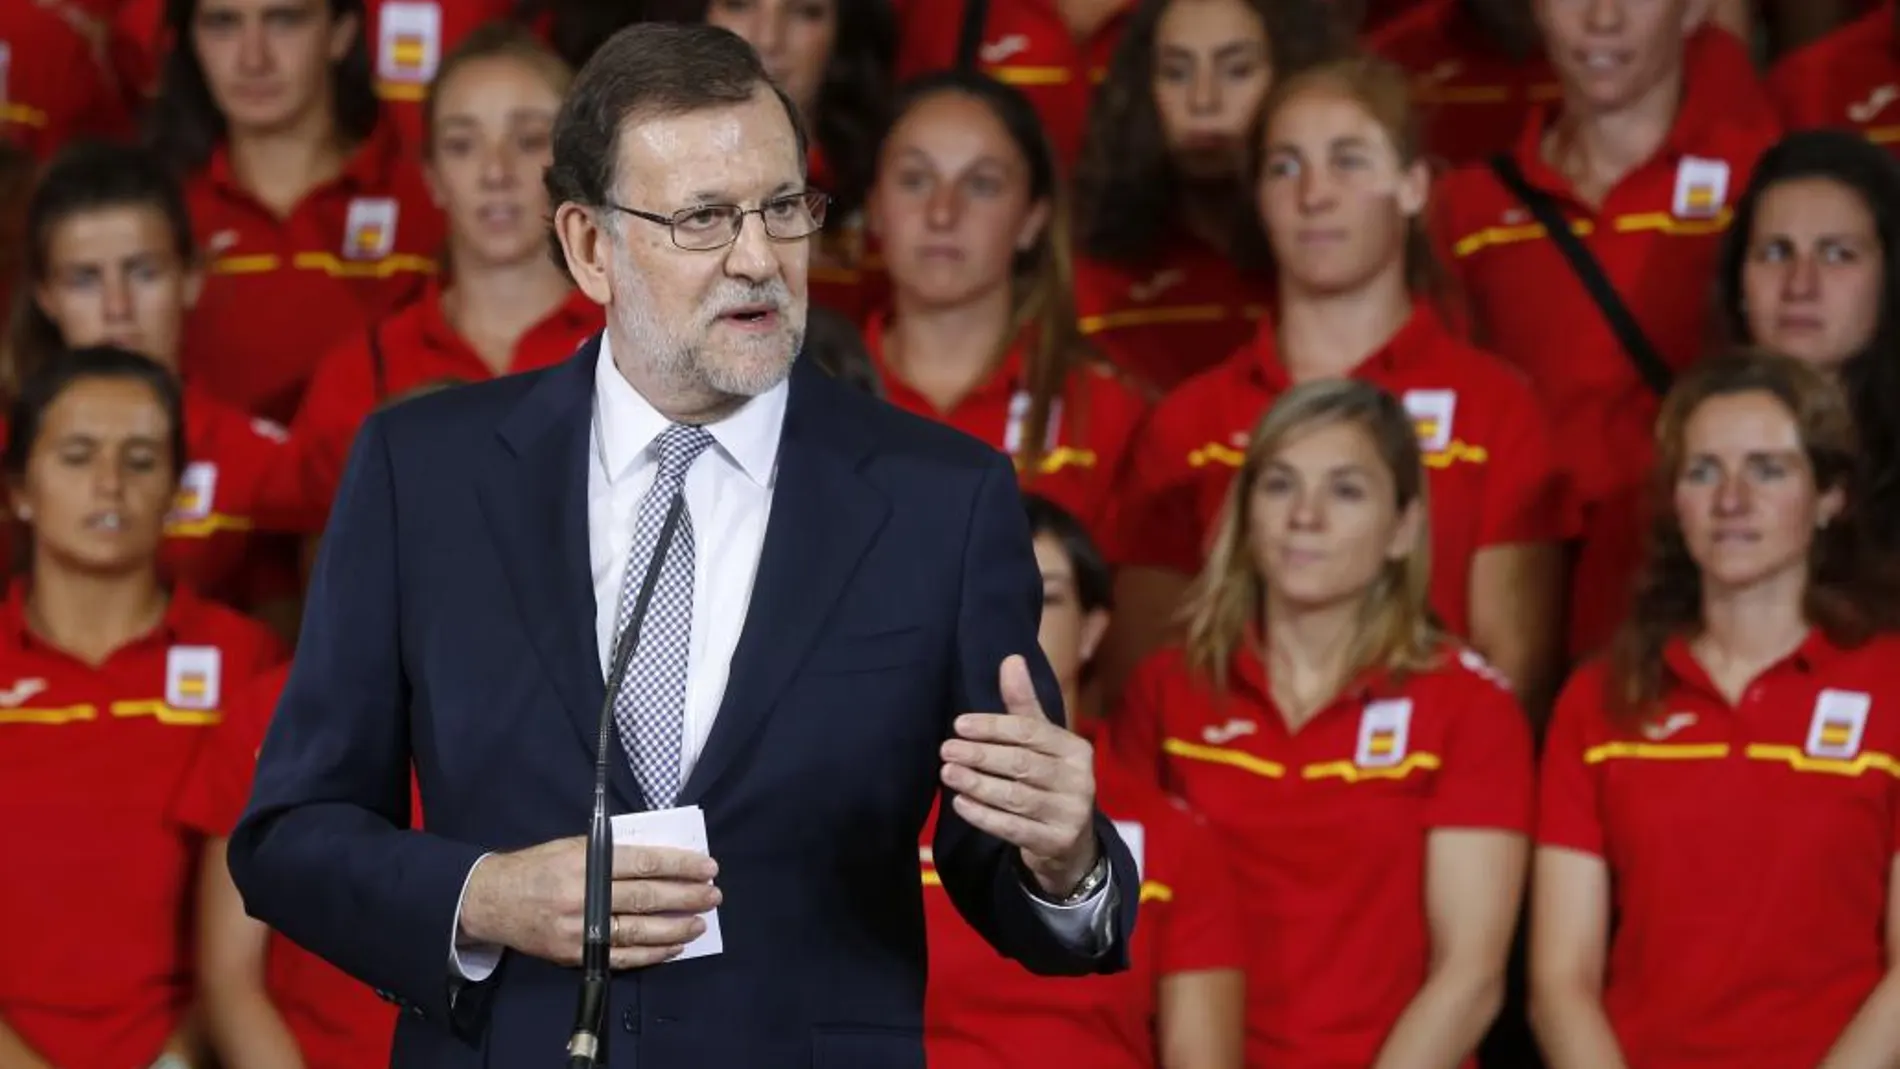 El presidente del Gobierno en funciones, Mariano Rajoy, durante la recepción ofrecida hoy al Equipo Olímpico Español que participará en los Juegos Olímpicos de Río de Janeiro